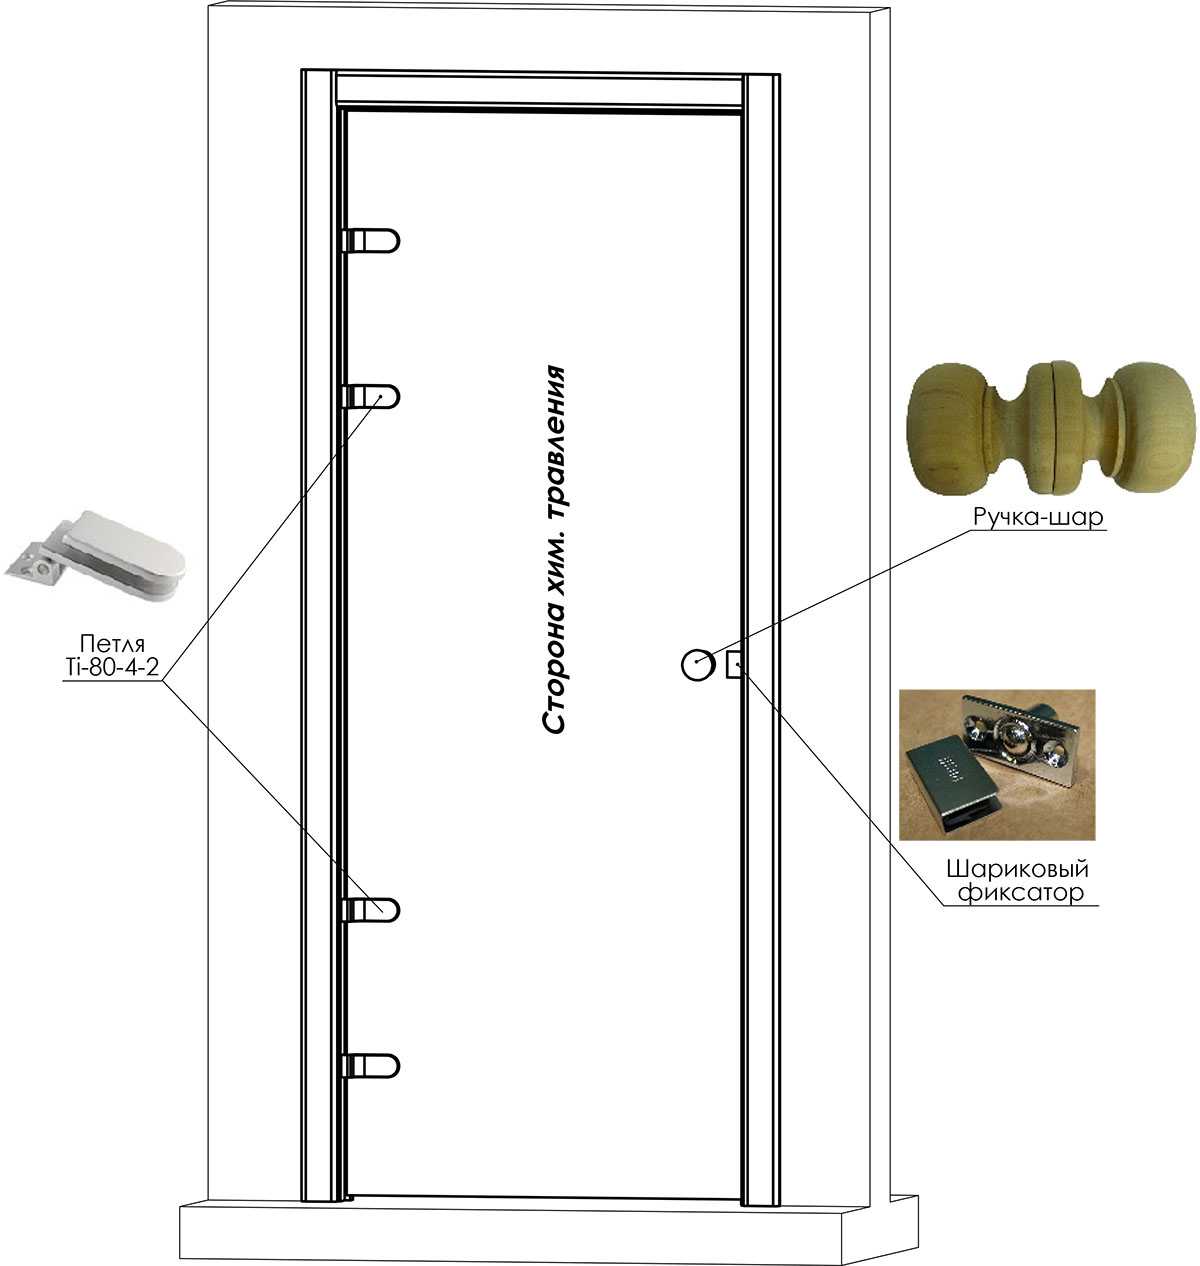 Самостоятельная установка петель на двери – подробное руководство